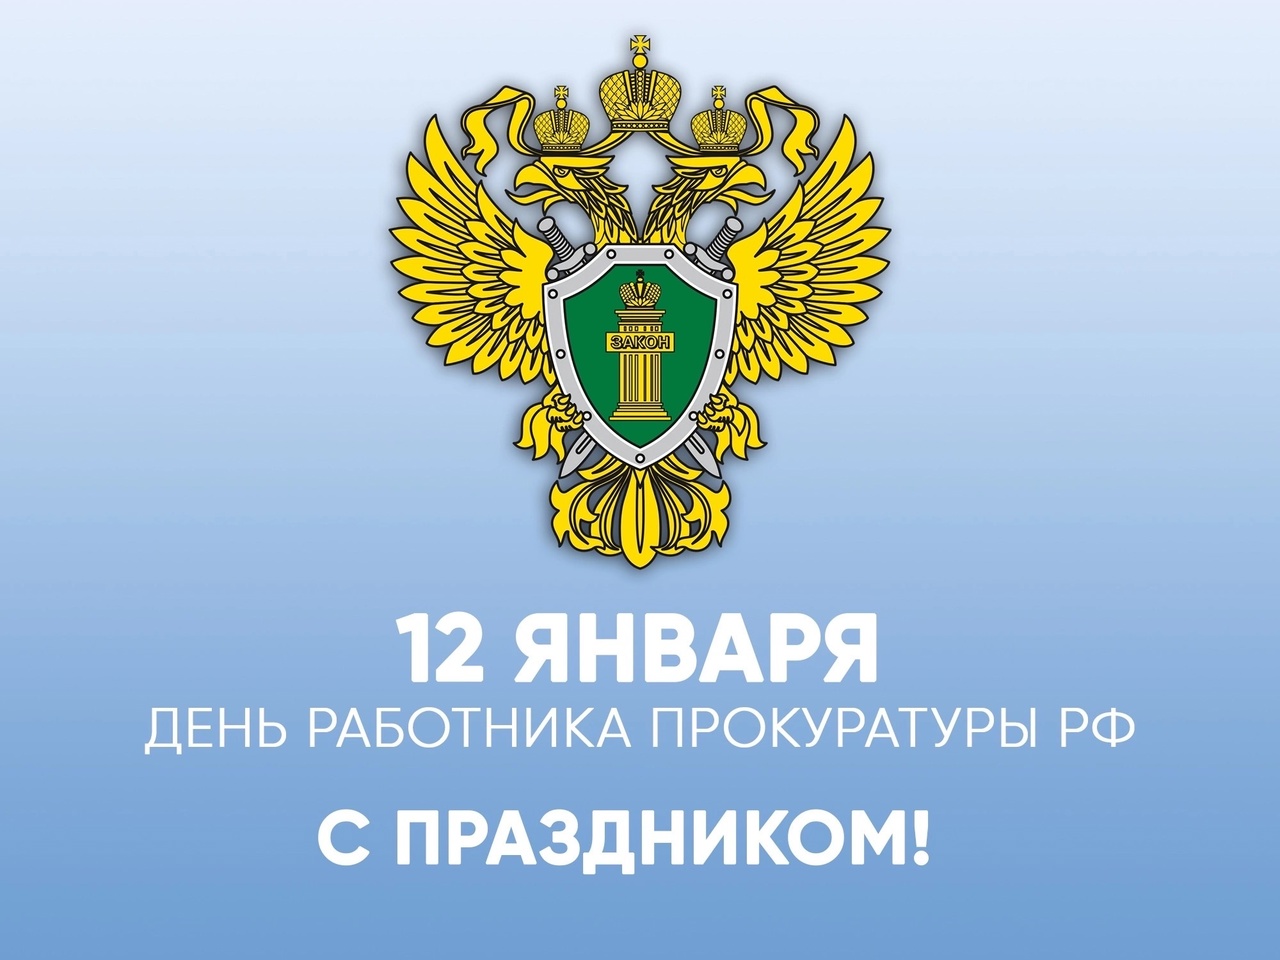 12 января - День работника прокуратуры Российской Федерации.